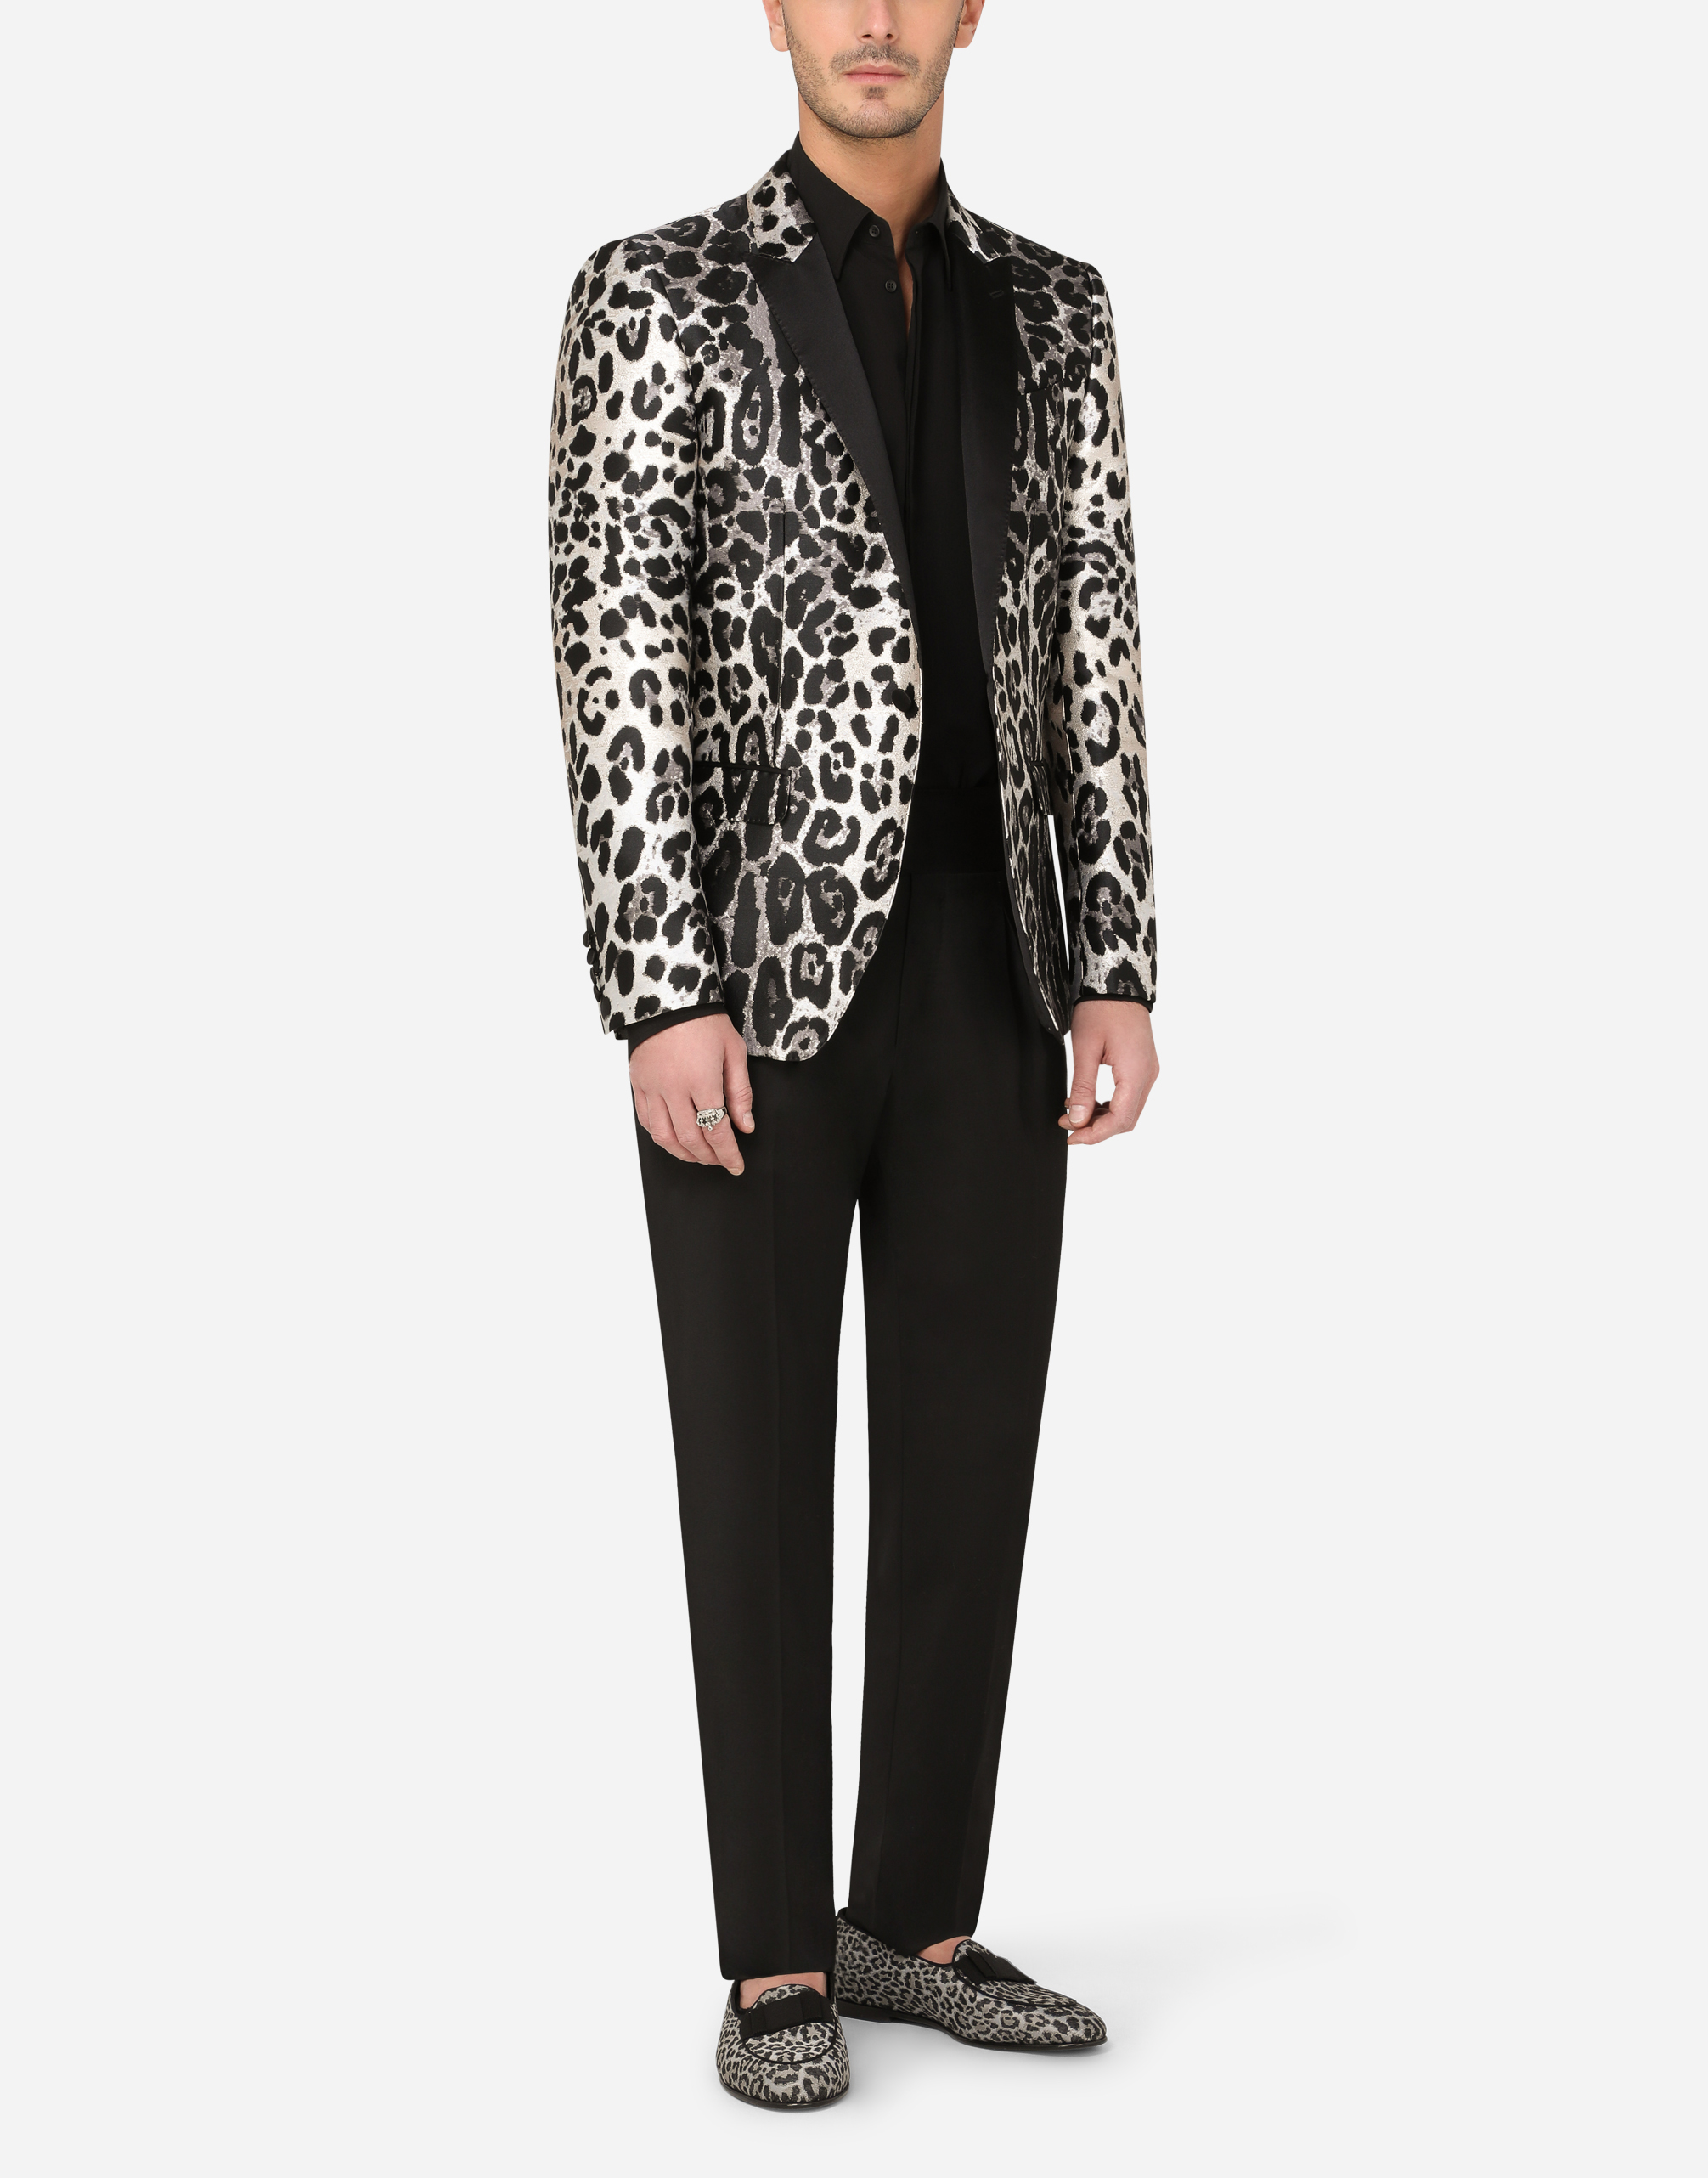 Dolce & Gabbana Uomo Abbigliamento Cappotti e giubbotti Giacche Giacche jacquard Giacca tuxedo Martini jacquard leopardo male 50 Abiti e Giacche 